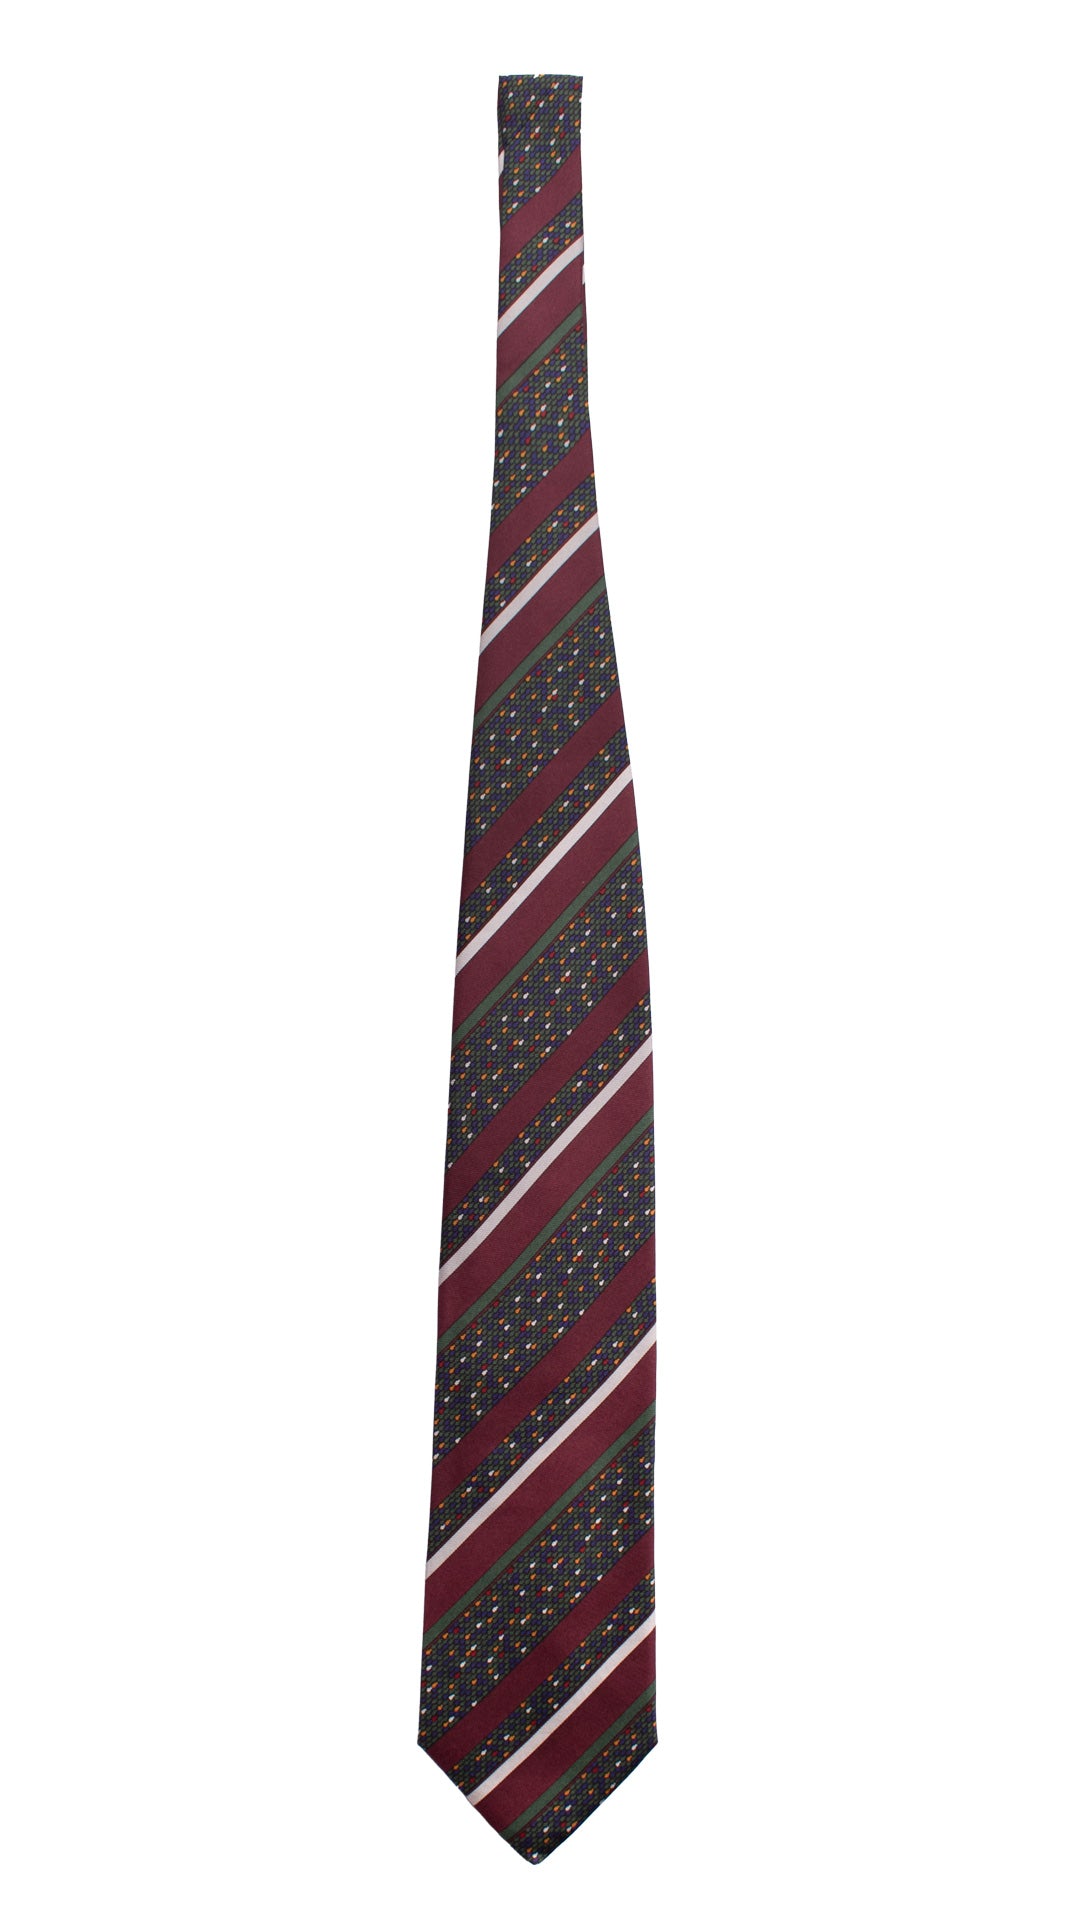 Cravatta Vintage Regimental in Twill di Seta Bordeaux A Righe Multicolor  CV818